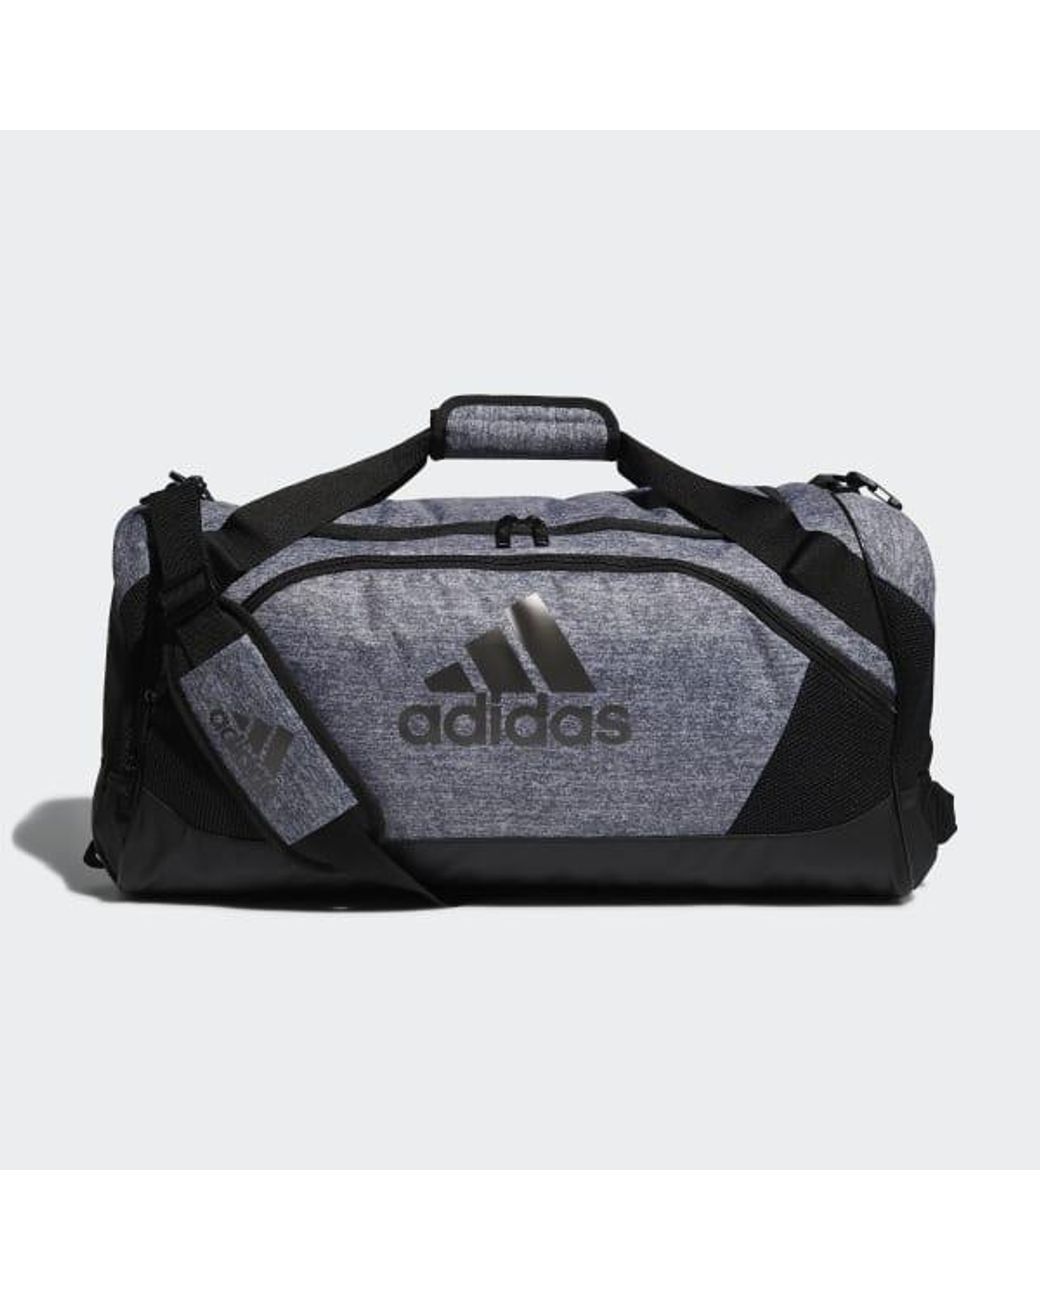 adidas team issue 2 duffel bag